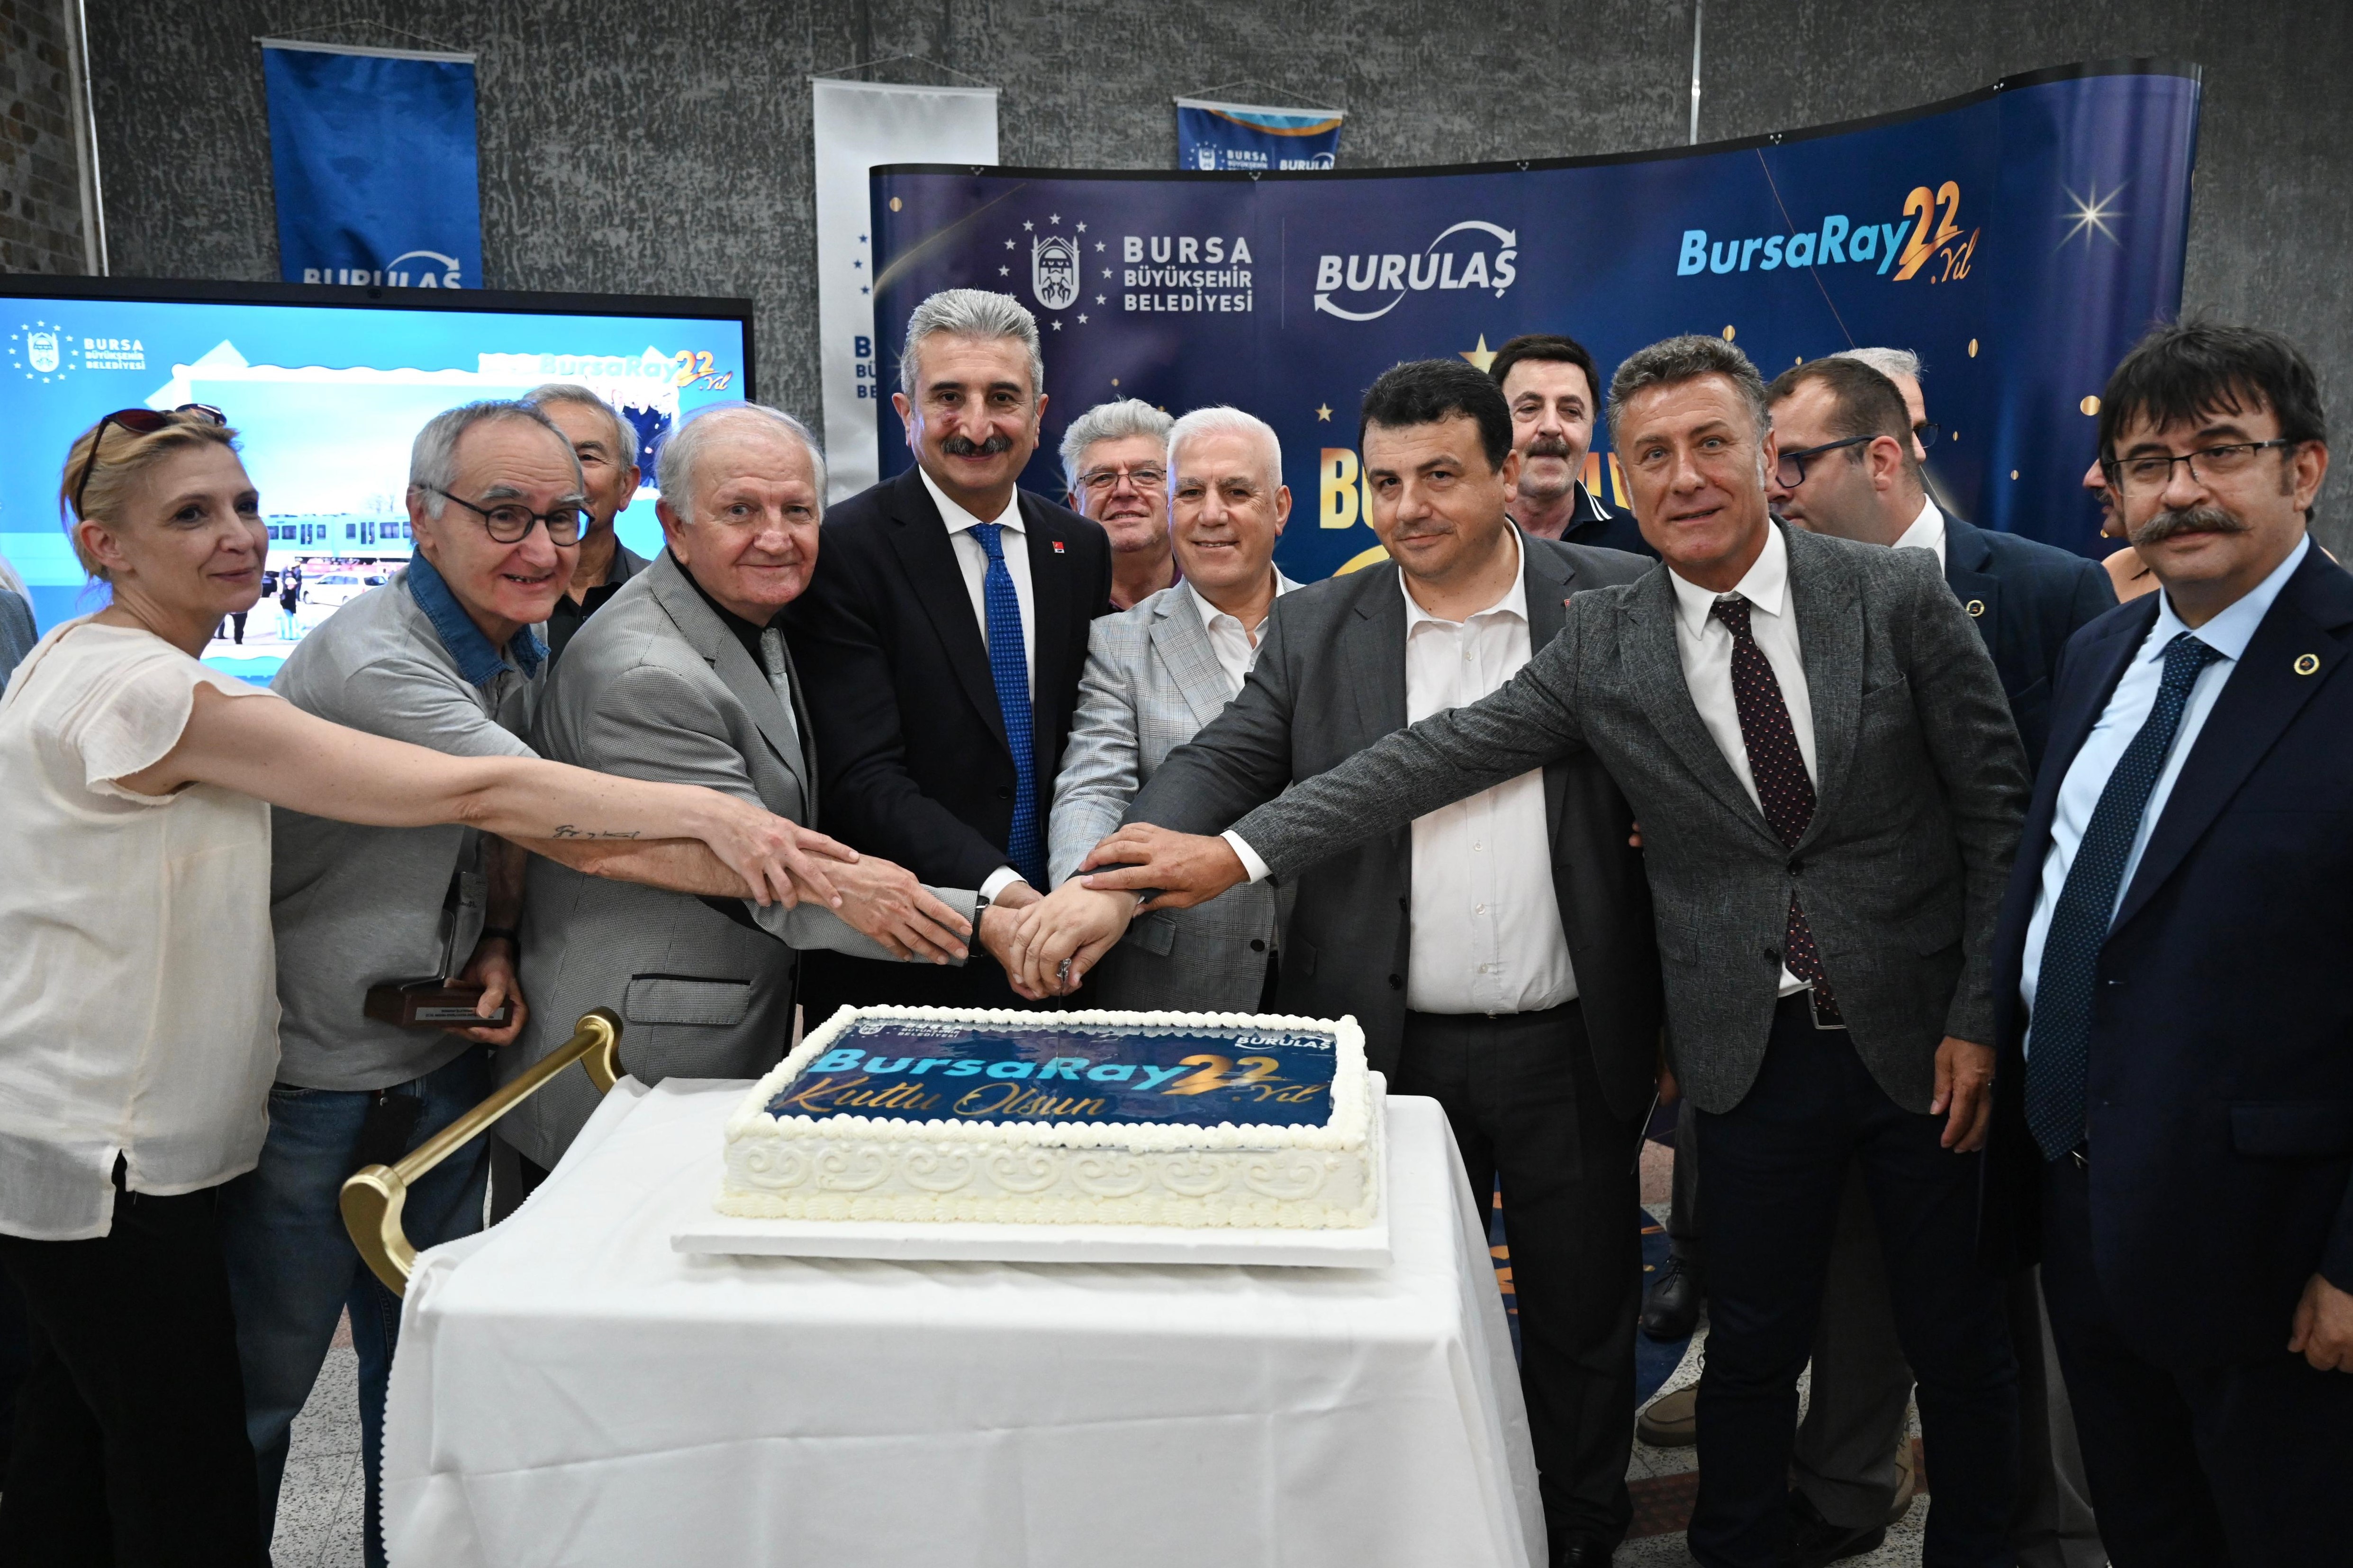 BursaRay, 22 yıldır vatandaşlara hizmet veriyor